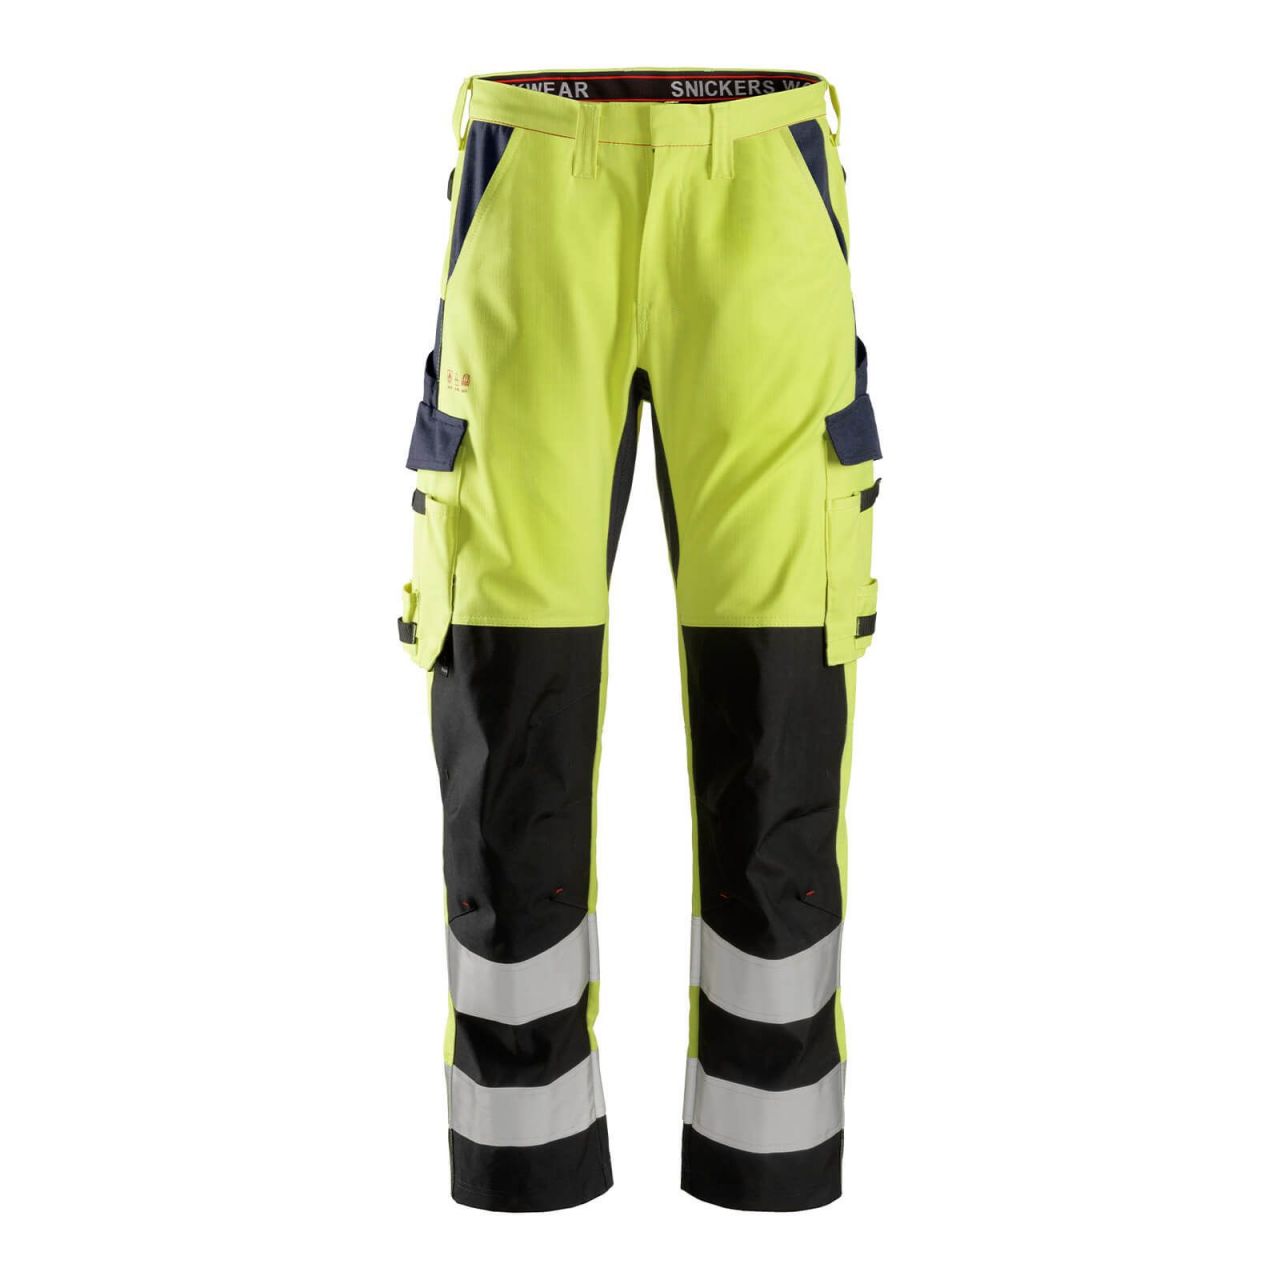 6364 Pantalones largos de trabajo de alta visibilidad clase 2 con espinilla reforzada ProtecWork amarillo-azul marino talla 150